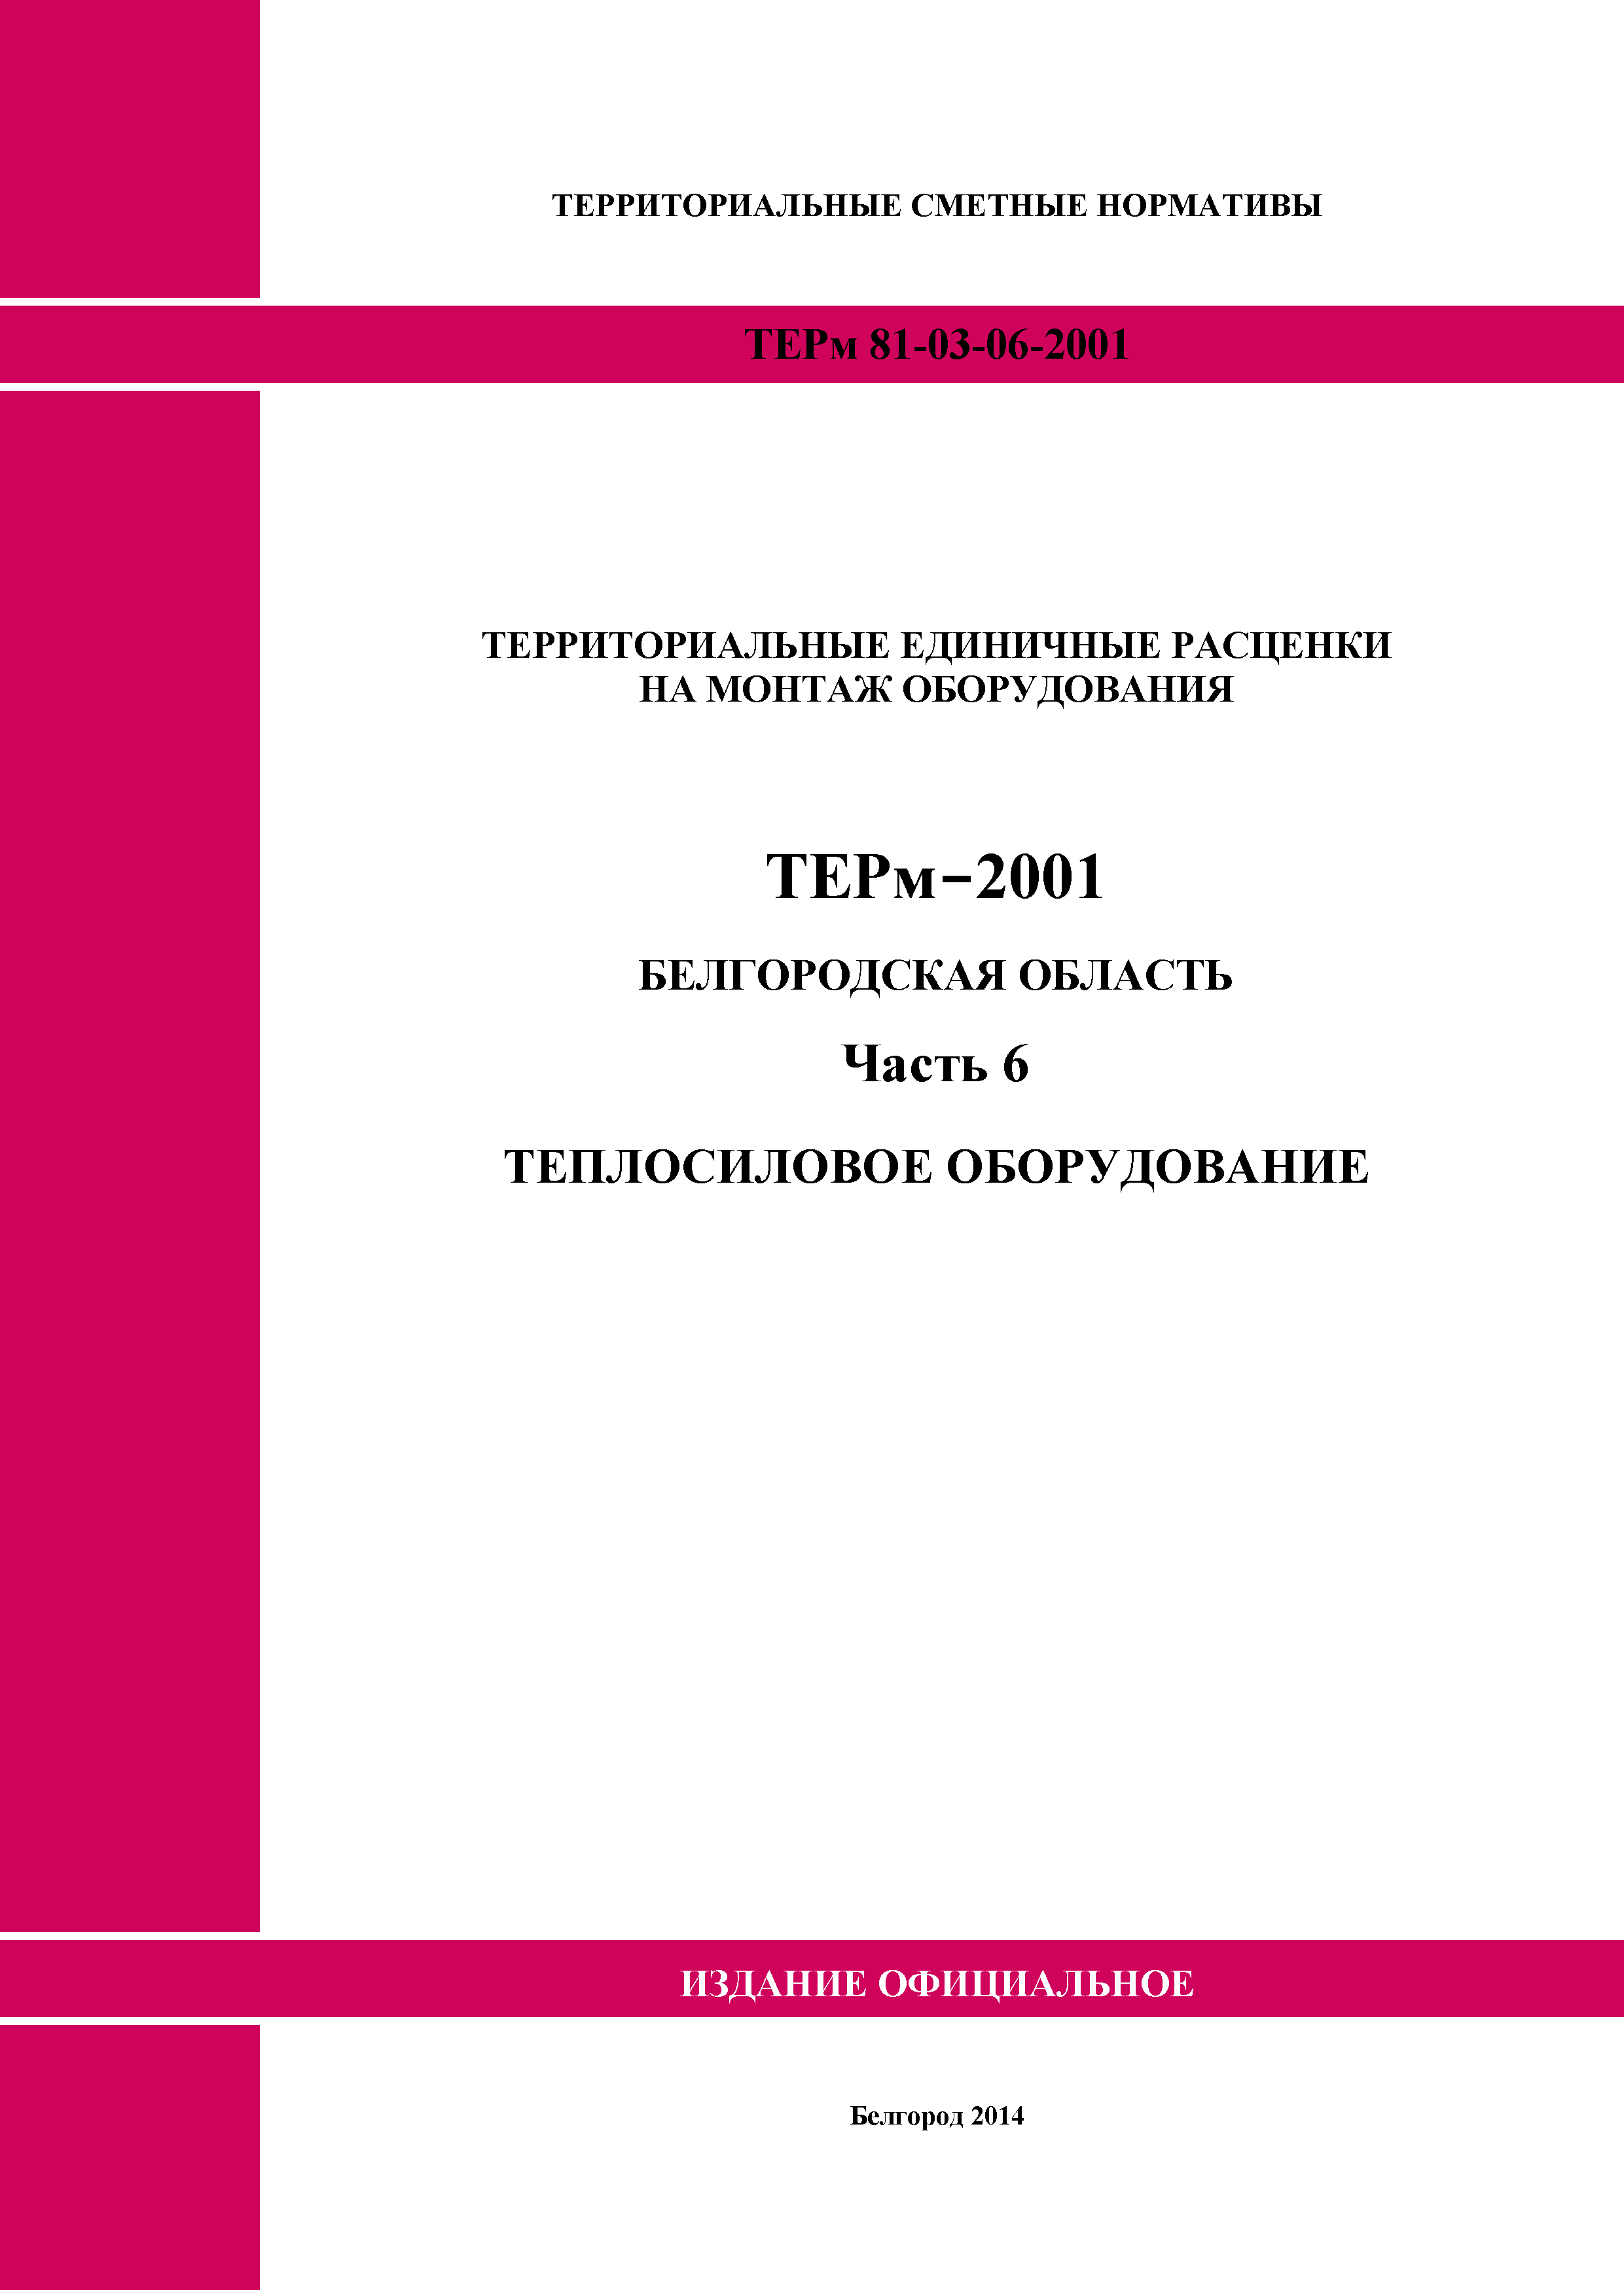 ТЕРм Белгородская область 81-03-06-2001